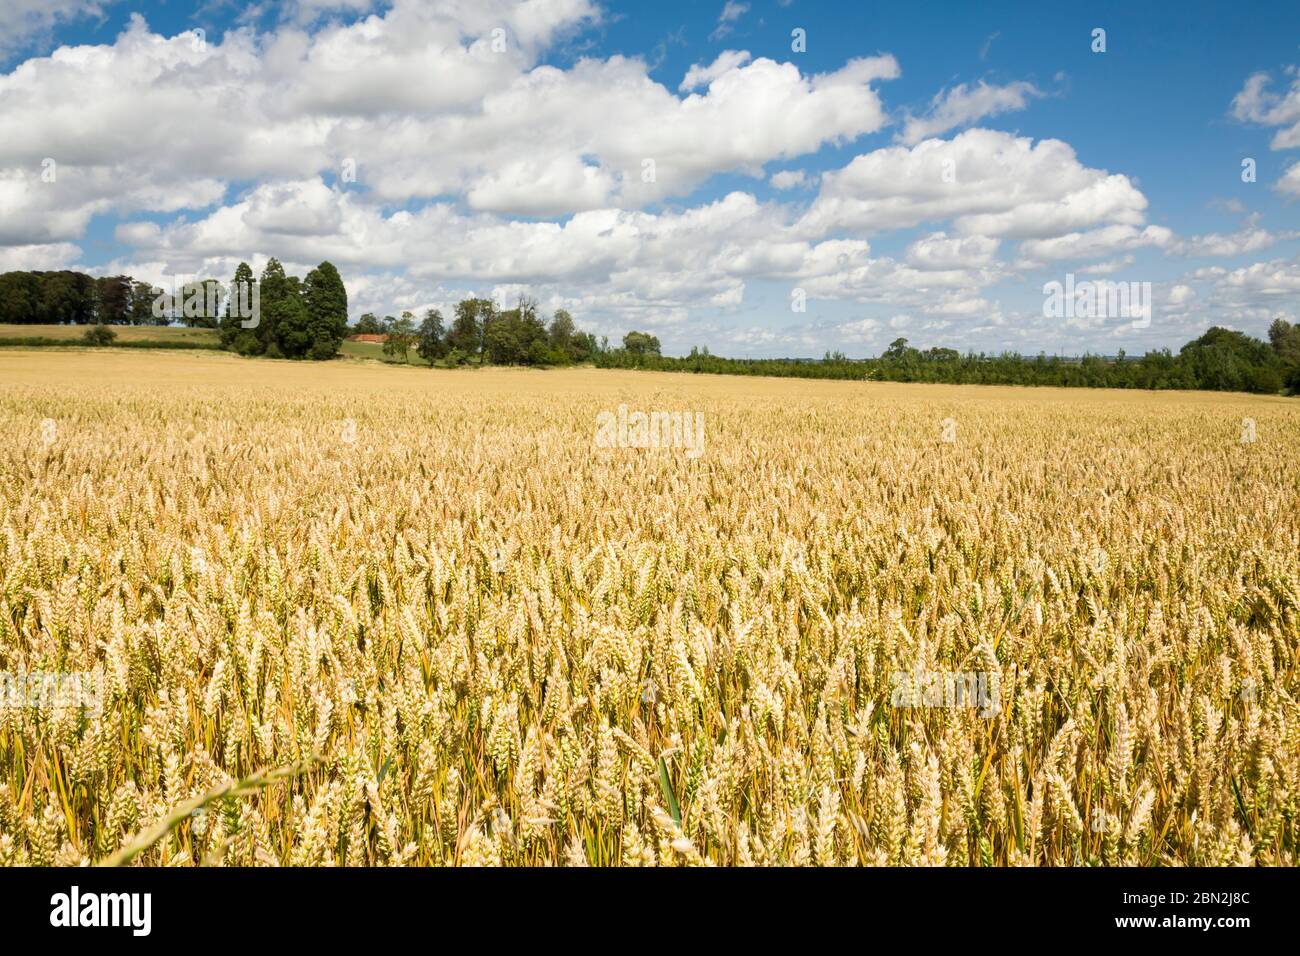 Felder mit goldenem Weizen, Getreideanbau in britischen Ackerland Stockfoto